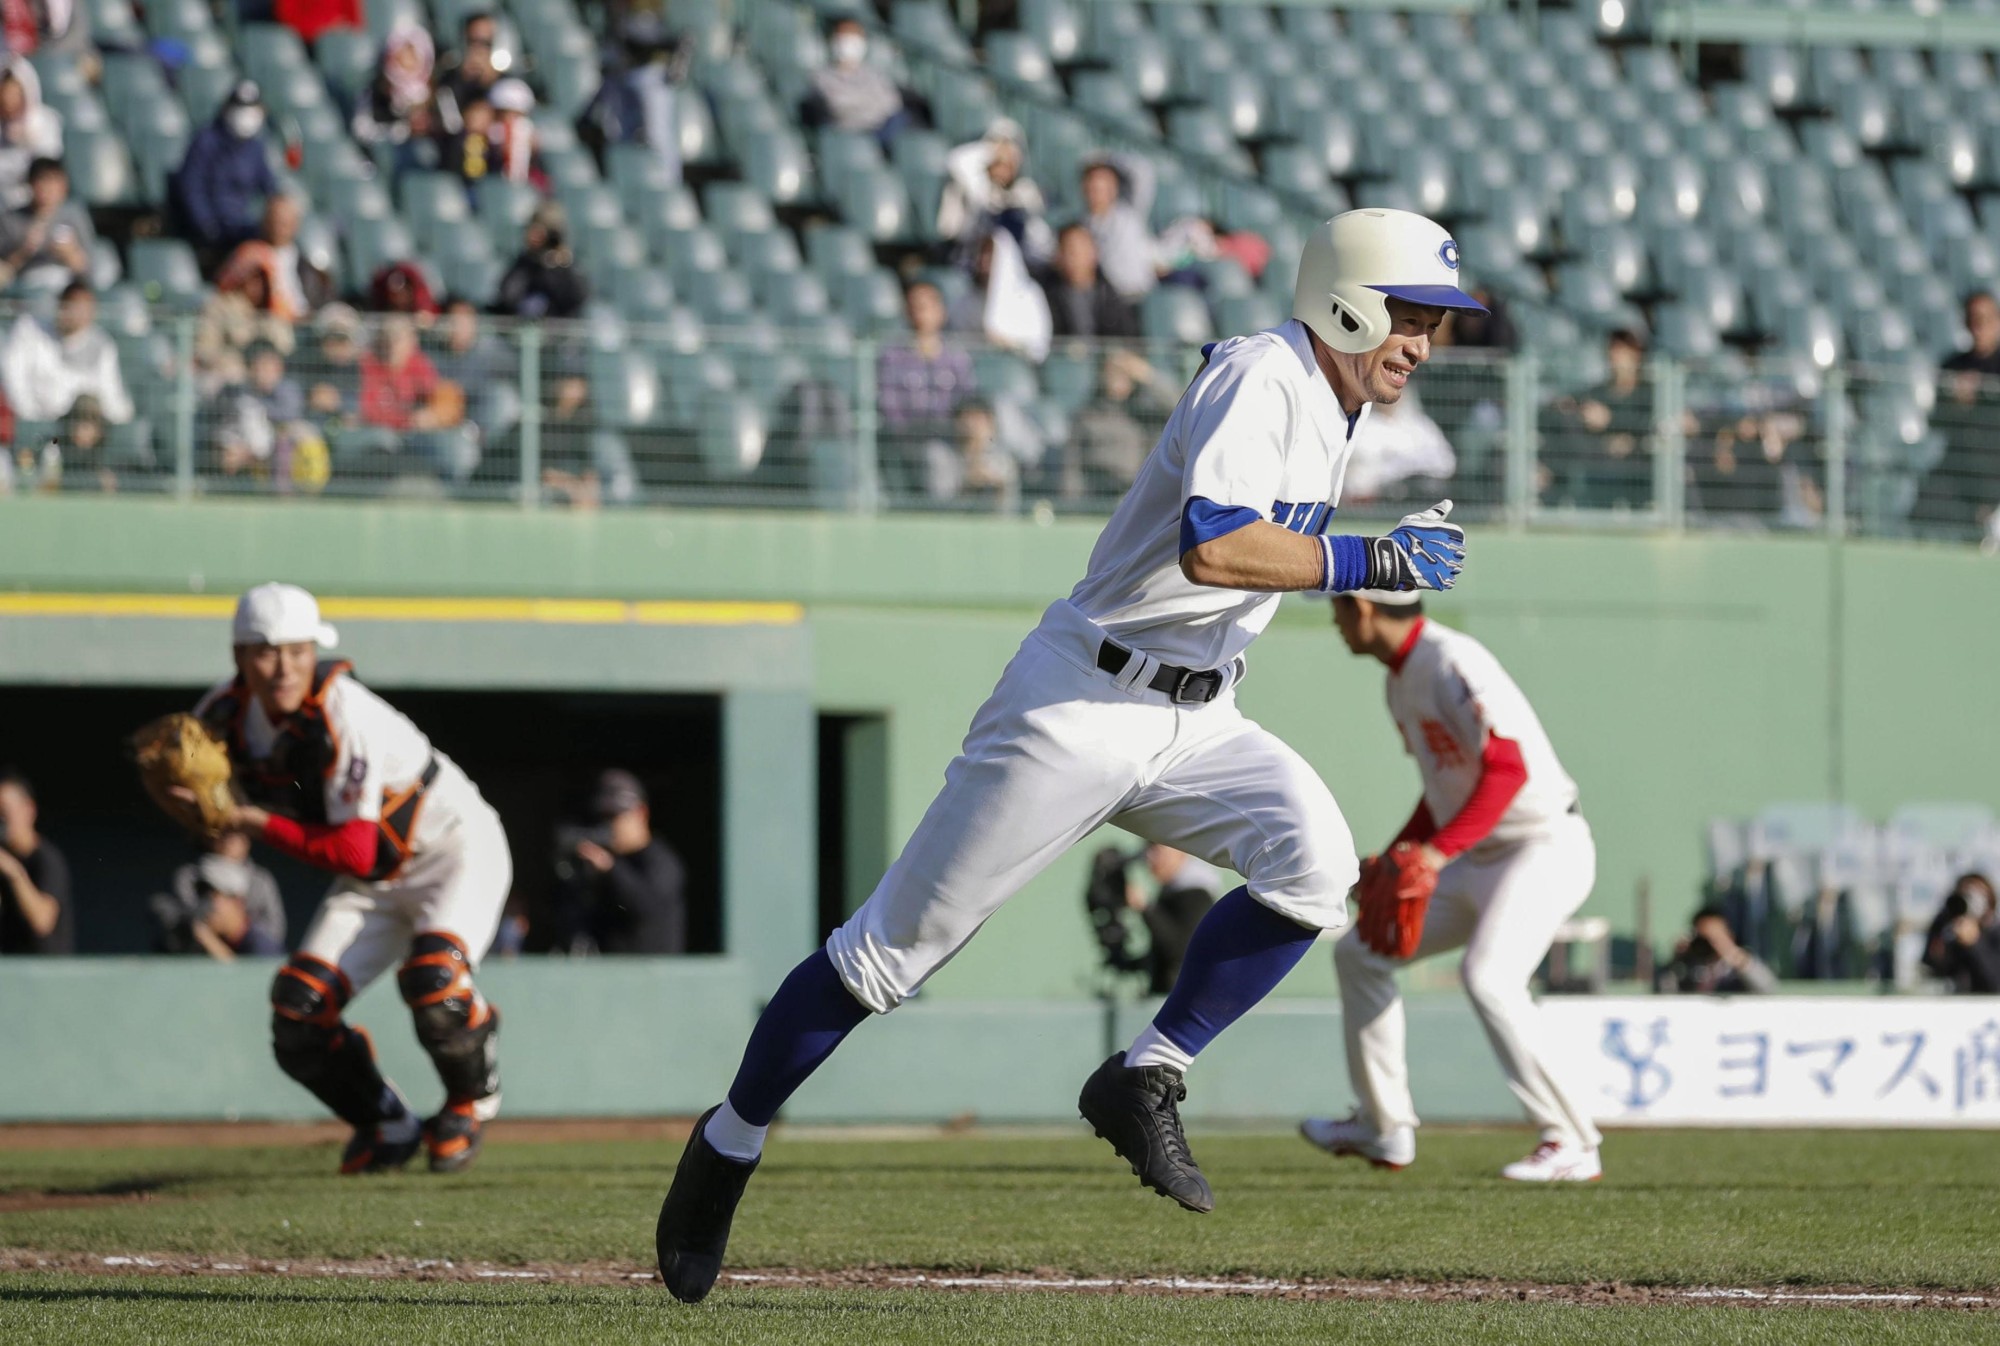 BASEBALL/ Ichiro Suzuki tosses shutout in amateur game, striking